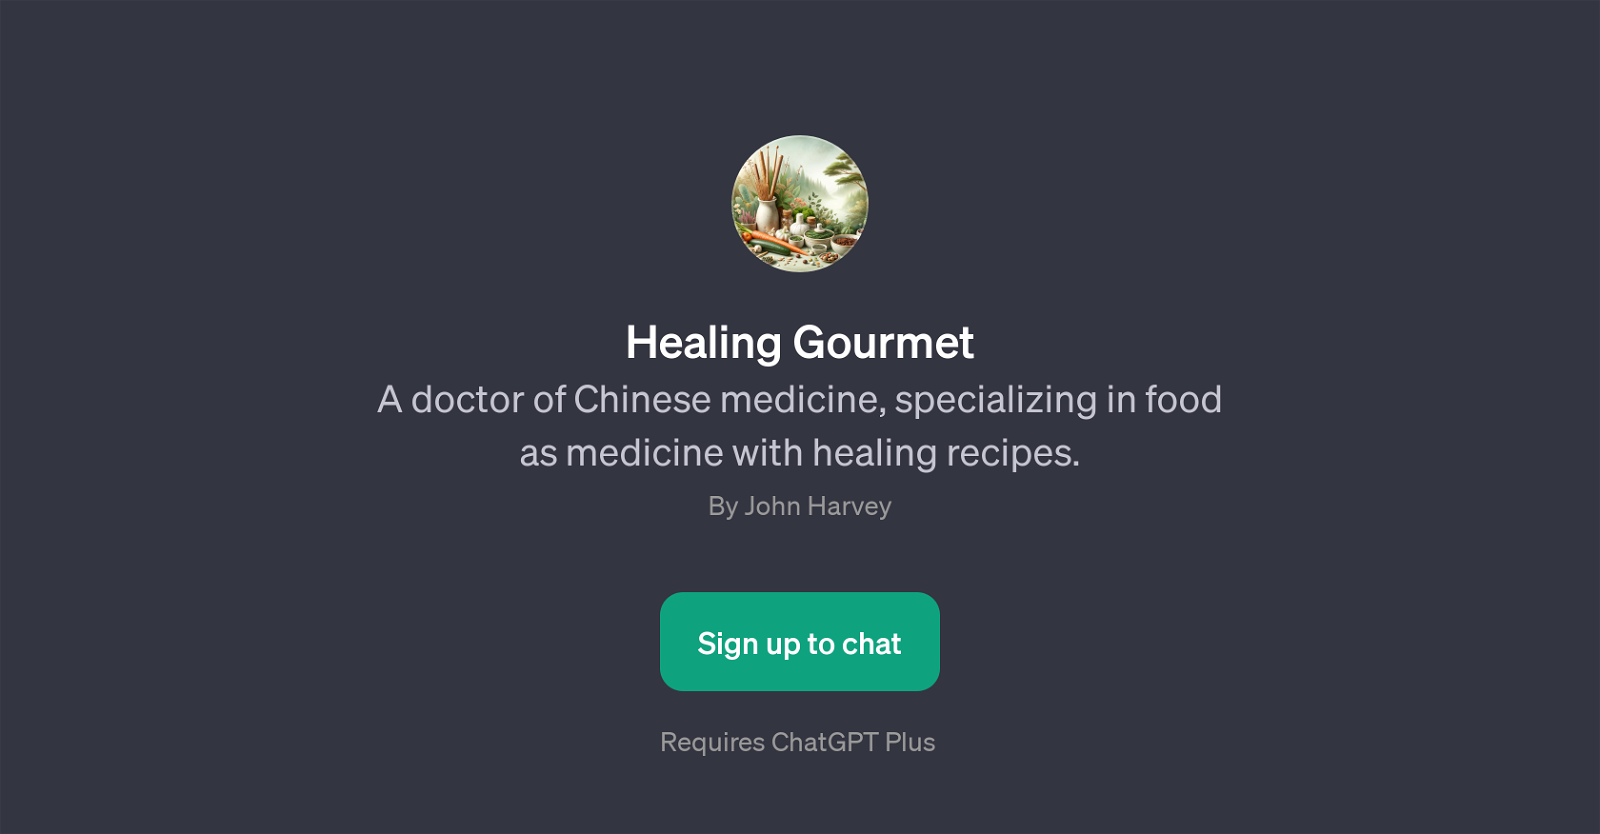 Healing Gourmet website